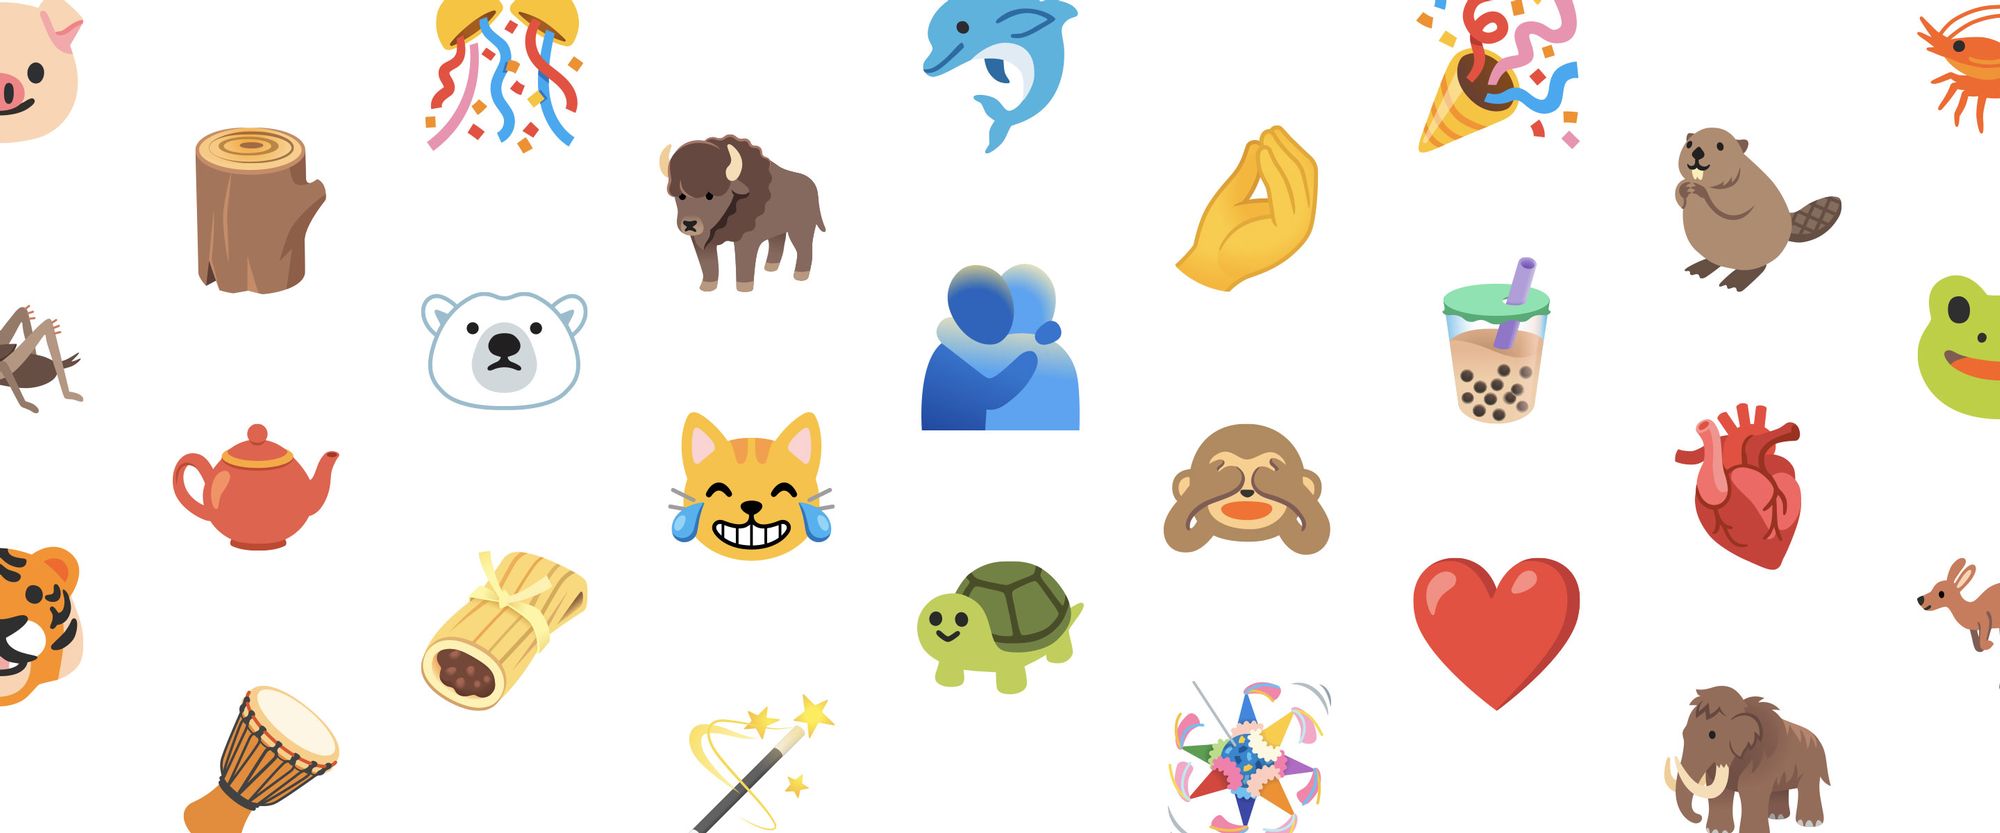 Android und iOS kriegen neue Emojis